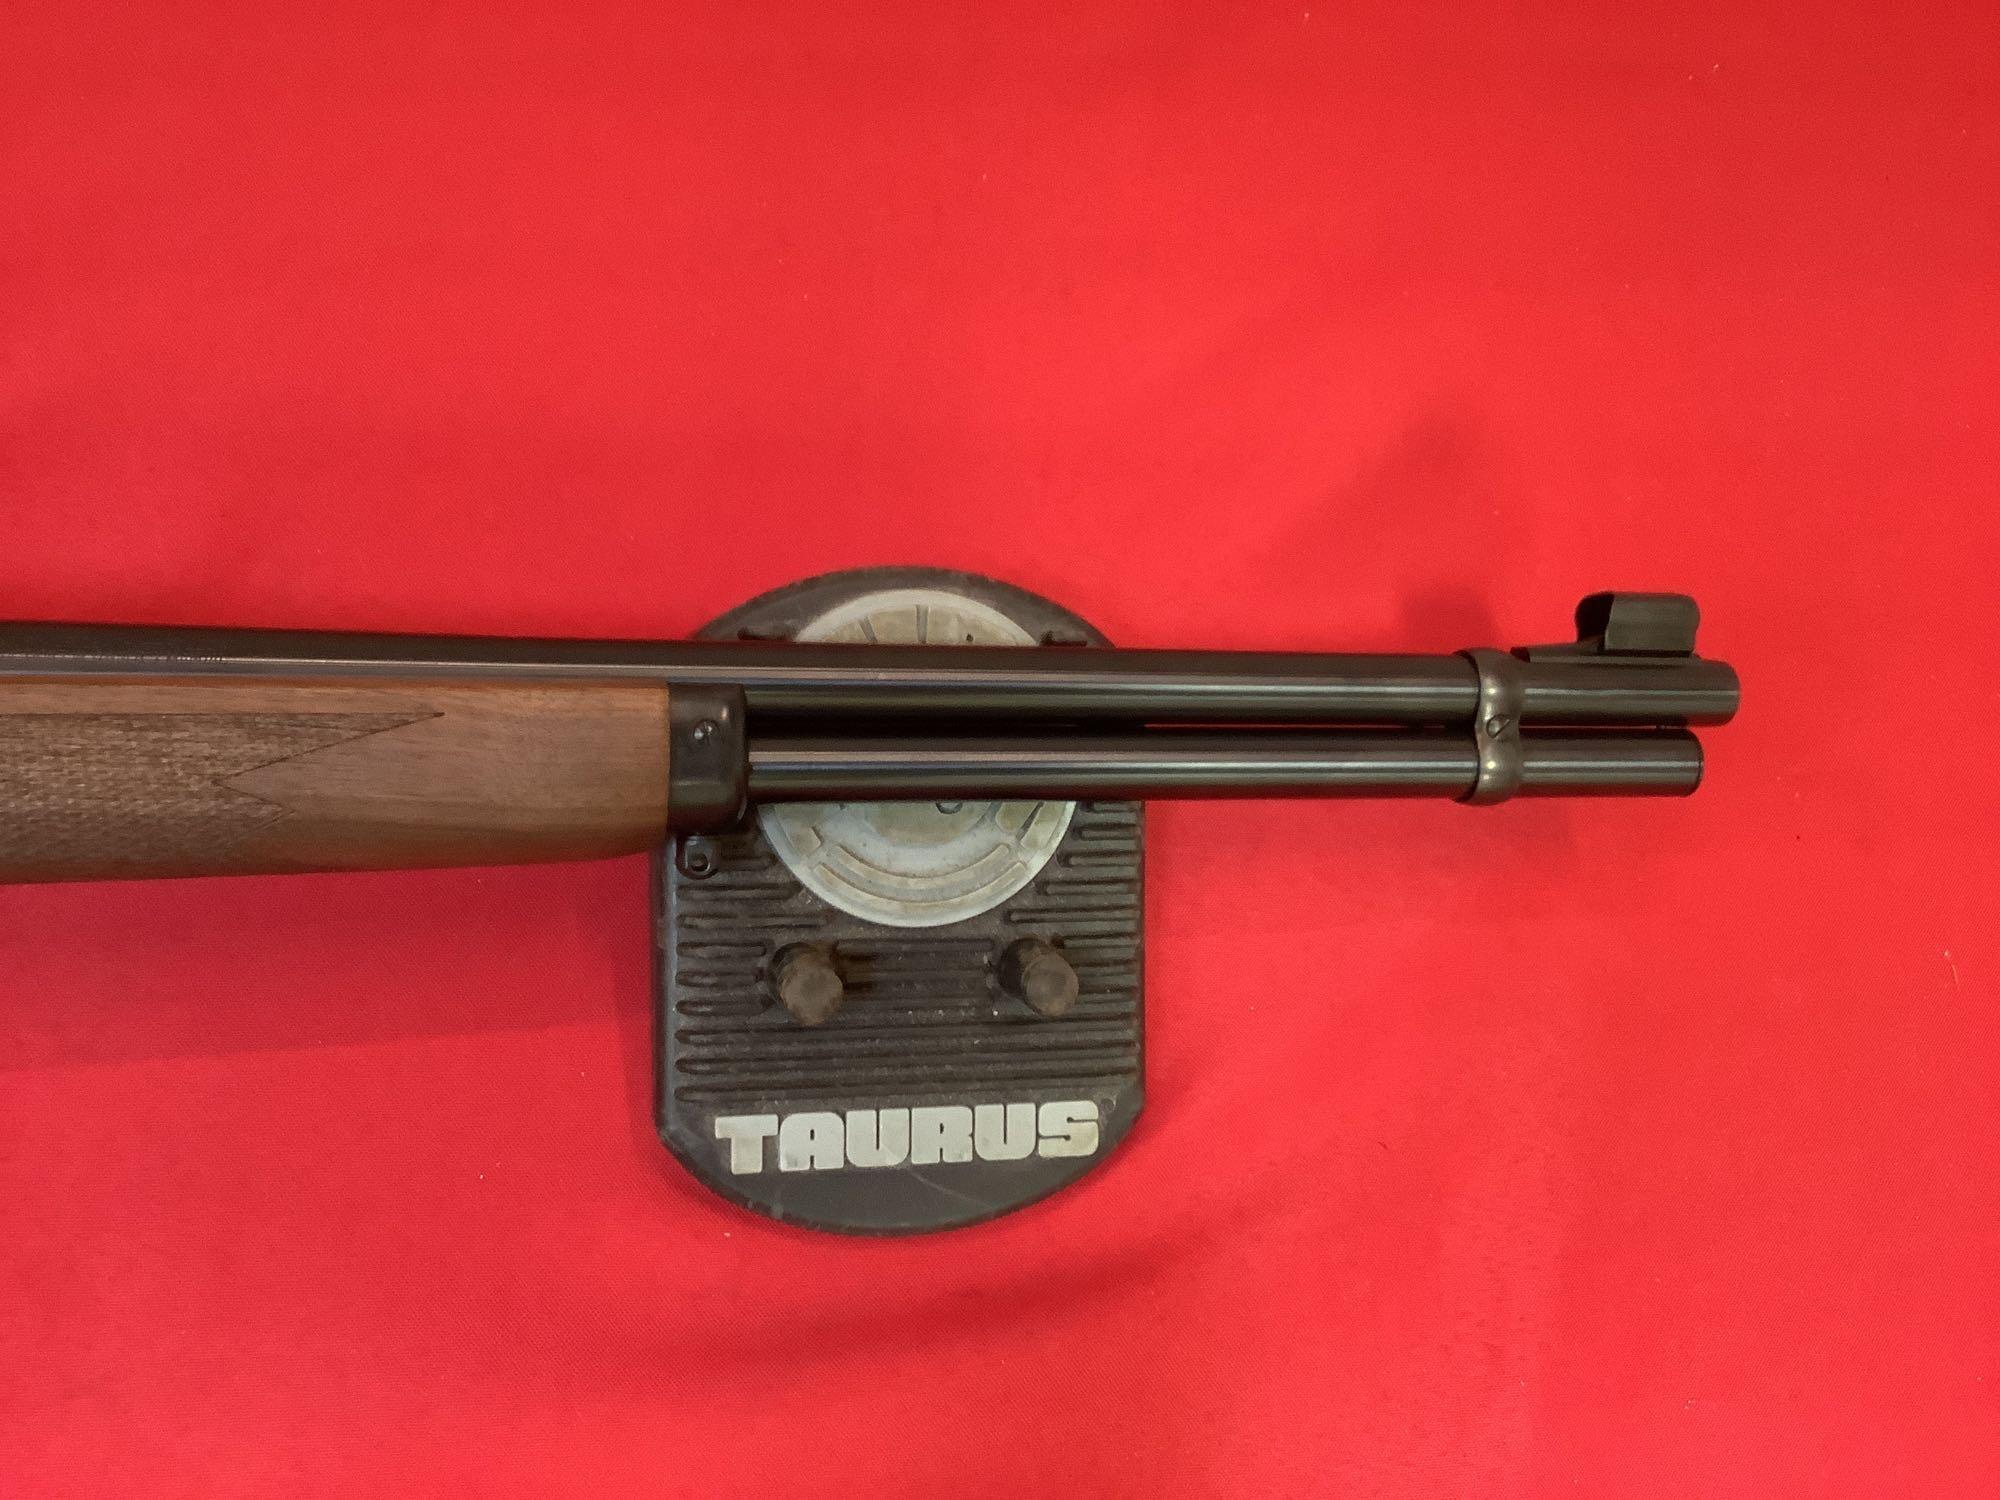 Marlin mod. 1894 Rifle